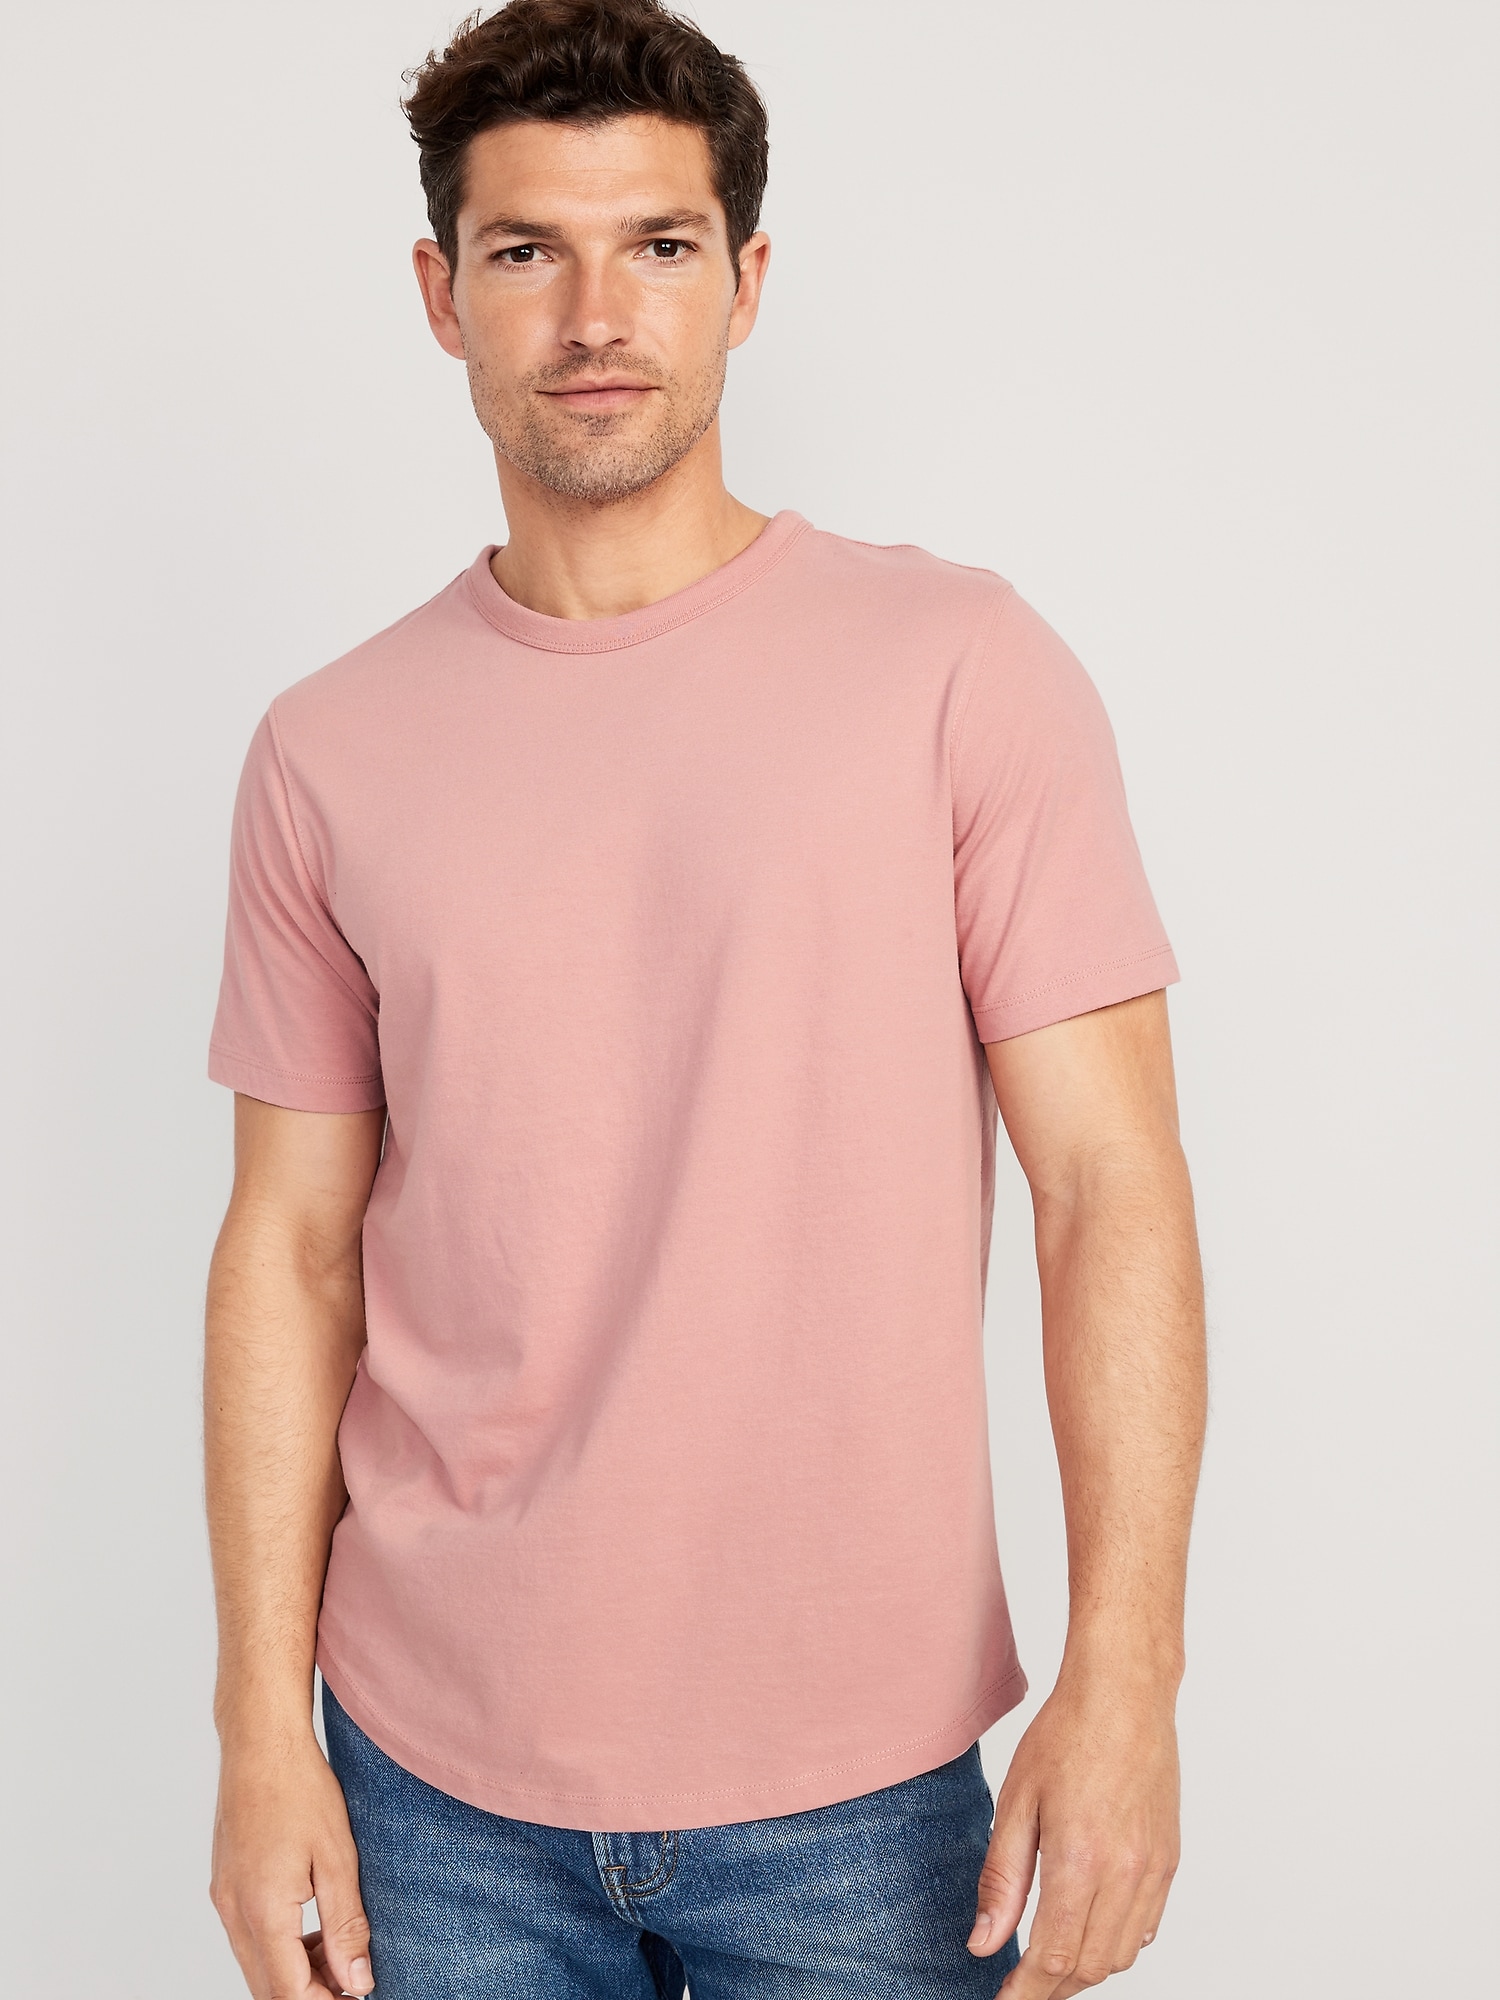 Old Navy Soft-Washed Curved-Hem T-Shirt for Men pink. 1